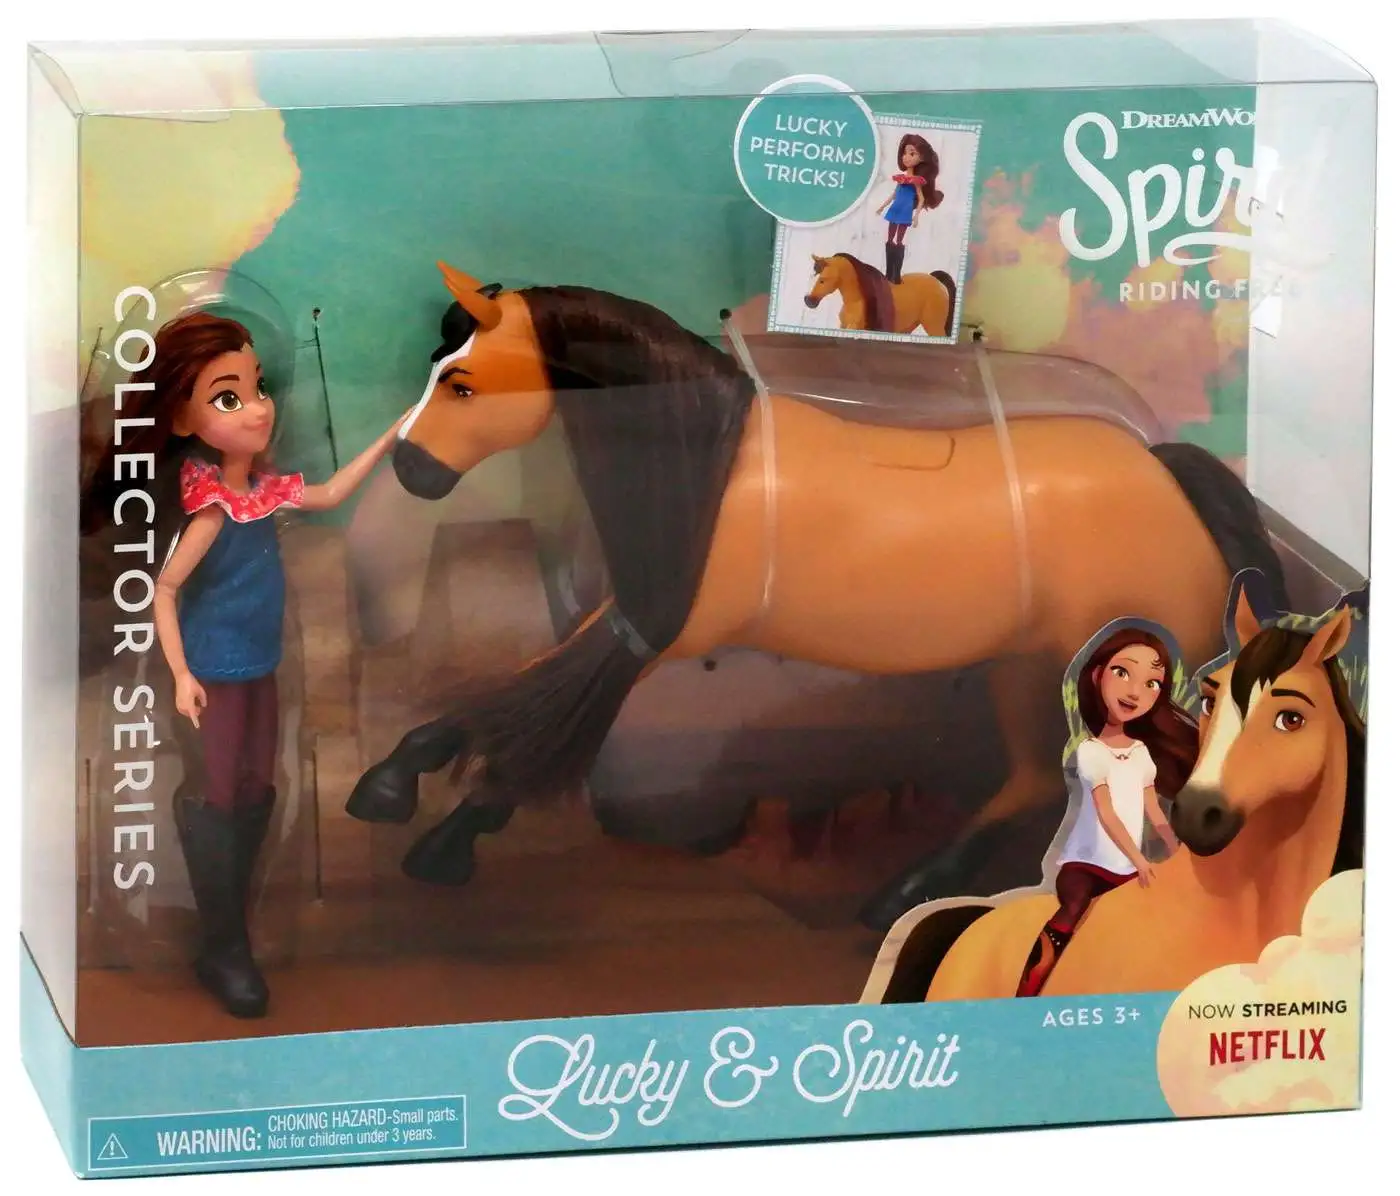 Bestaan voorjaar gelijkheid Spirit Riding Free Collector Series Lucky Spirit Figure Set Version 3,  Lucky Performs Tricks Just Play - ToyWiz